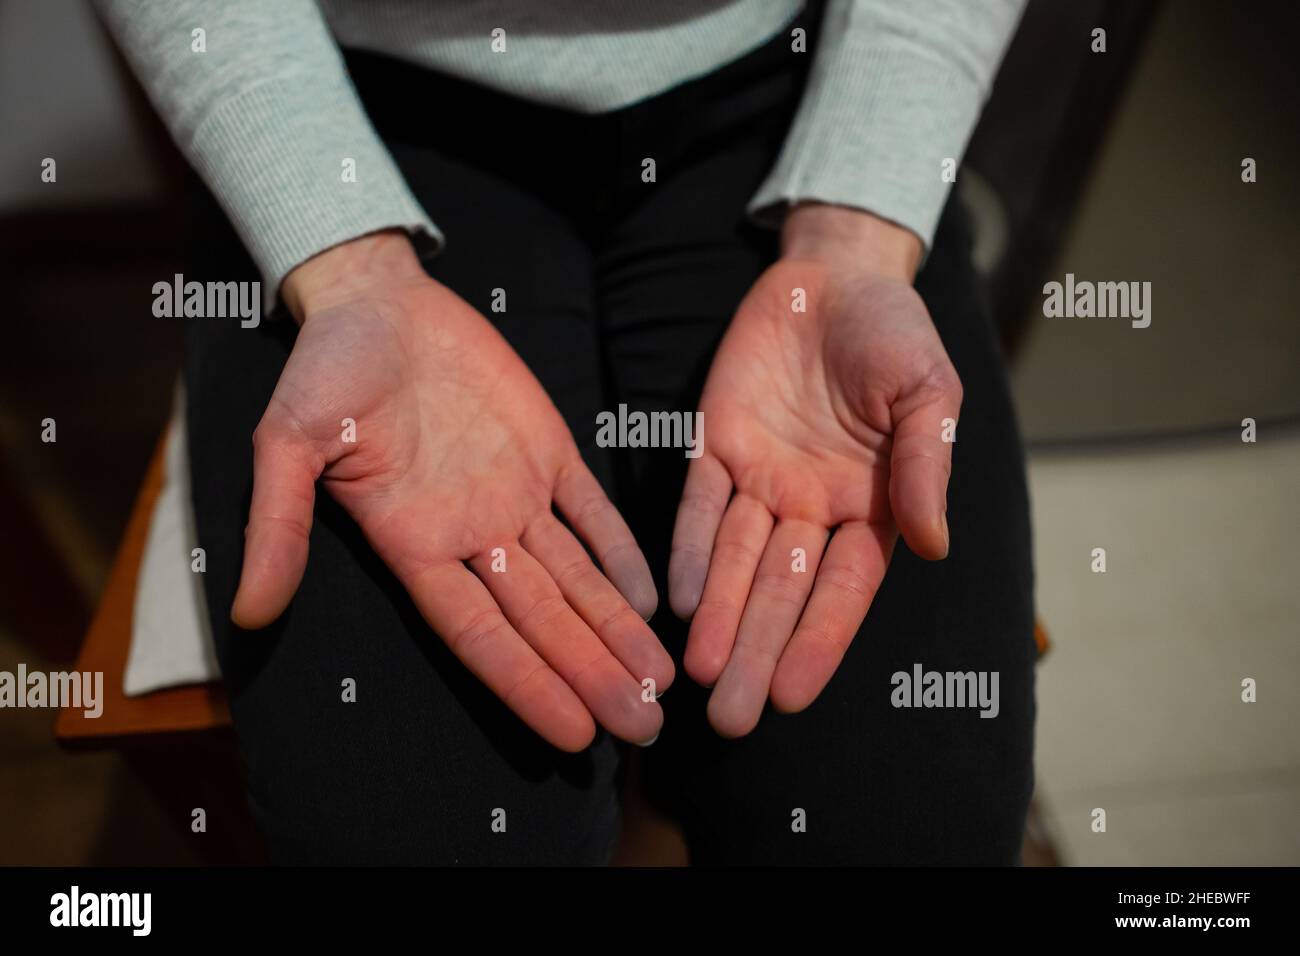 Hände einer Person mit Raynaud-Phänomen während des Angriffs mit einigen Fingern, die nach weißem Farbwechsel blau werden, Raynaud-Syndrom Raynaud-Syndrom Stockfoto